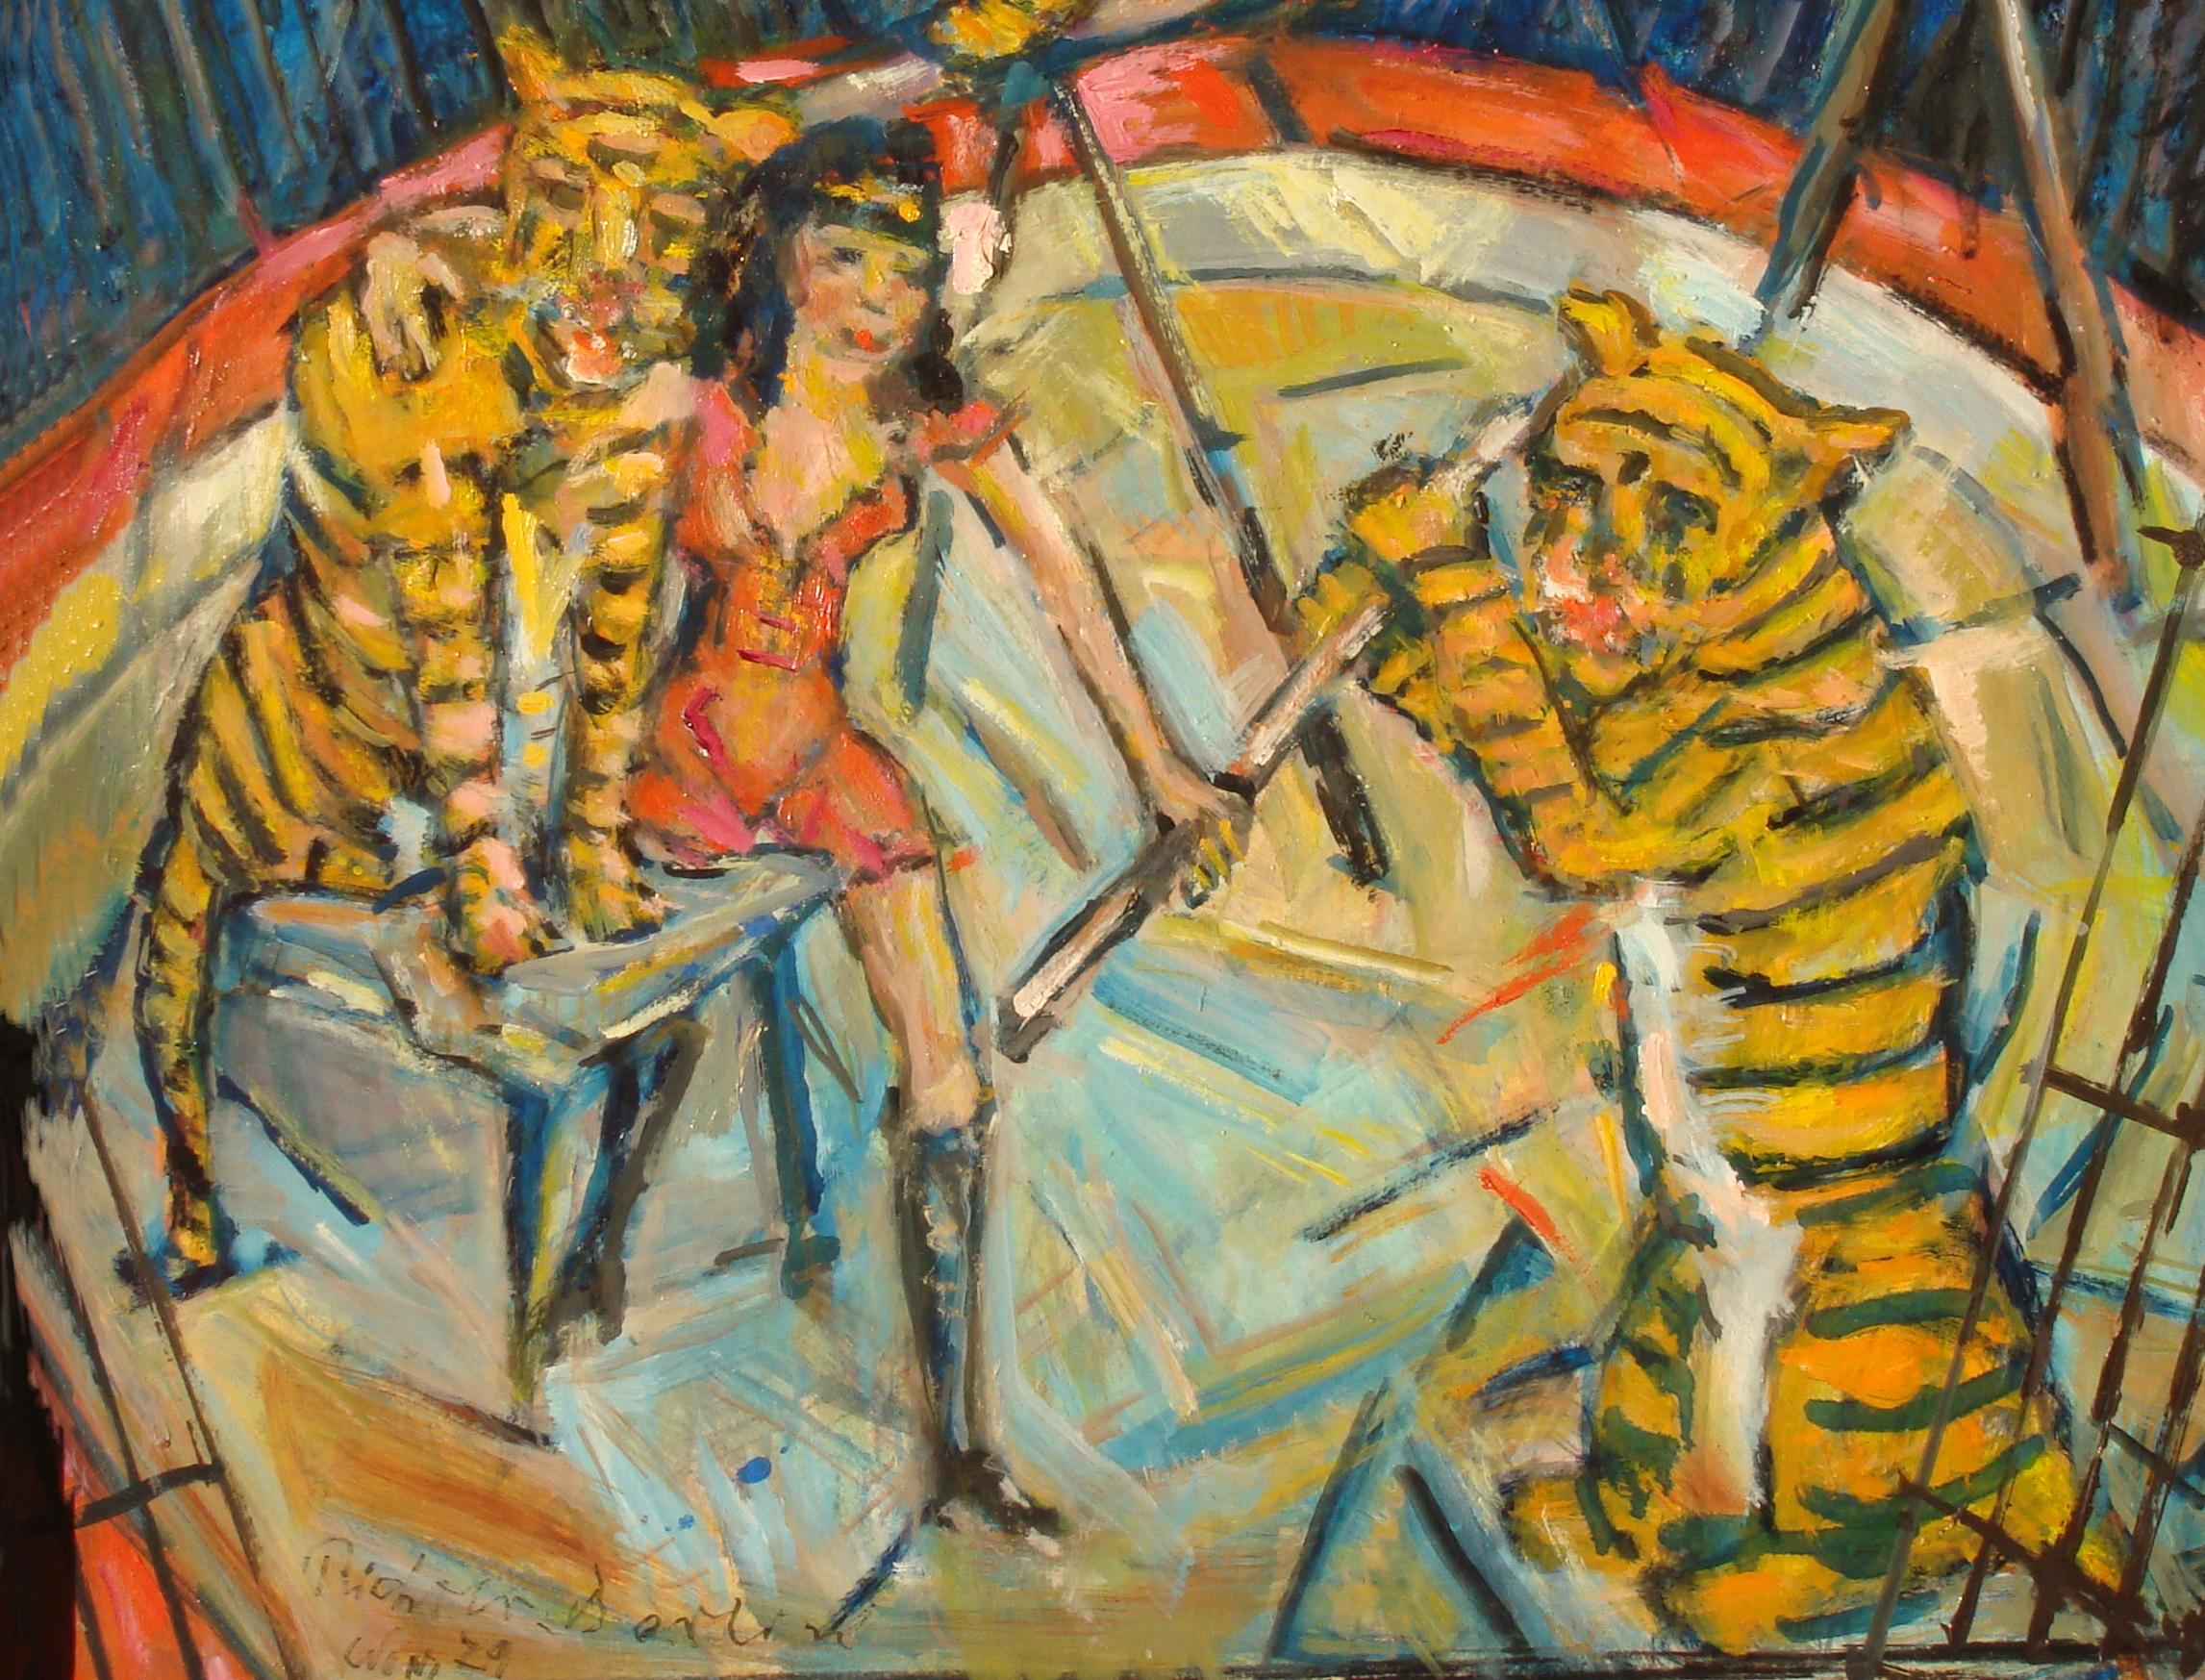 Heinrich Richter-Berlin, Ölgemälde, Tiger-Training, 1979 (Expressionismus), Painting, von Heinrich Richter (b.1884)